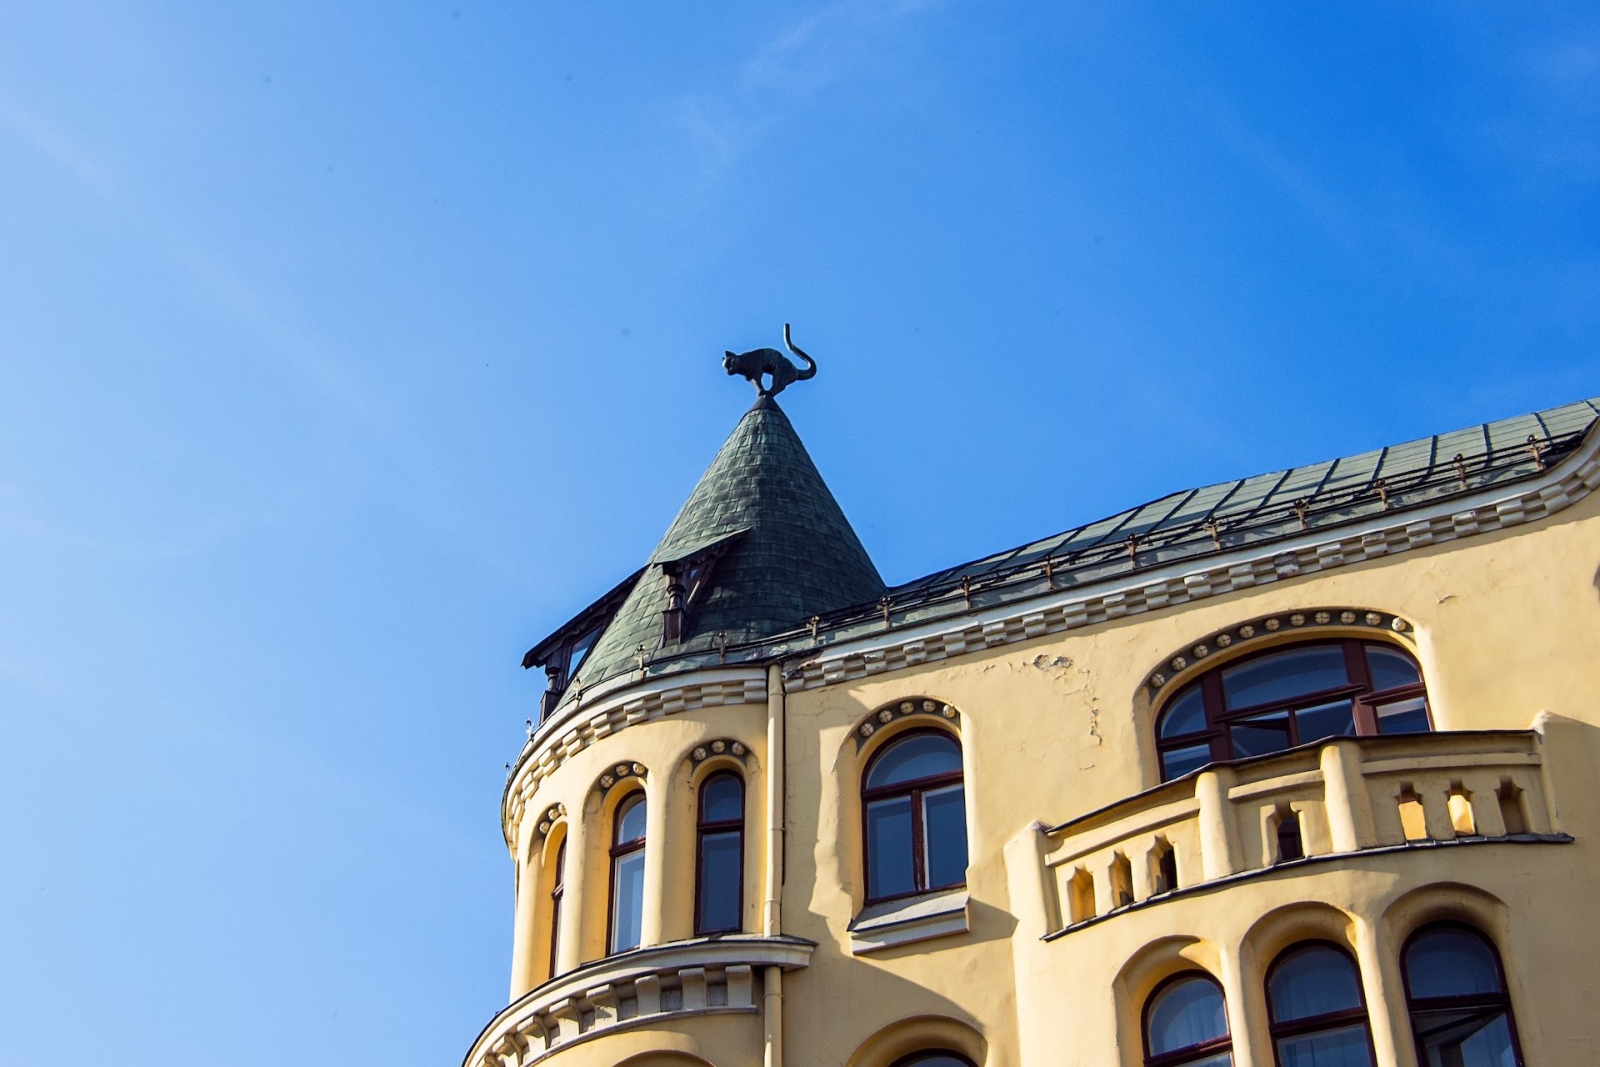 Das Katzenhaus (lettisch: Kaķu nams) befindet sich gegenüber dem Haus der Großen Gilde in der Altstadt von Riga, Lettland.  Mittelalterliche Architektur mit einigen Elementen der Kunst